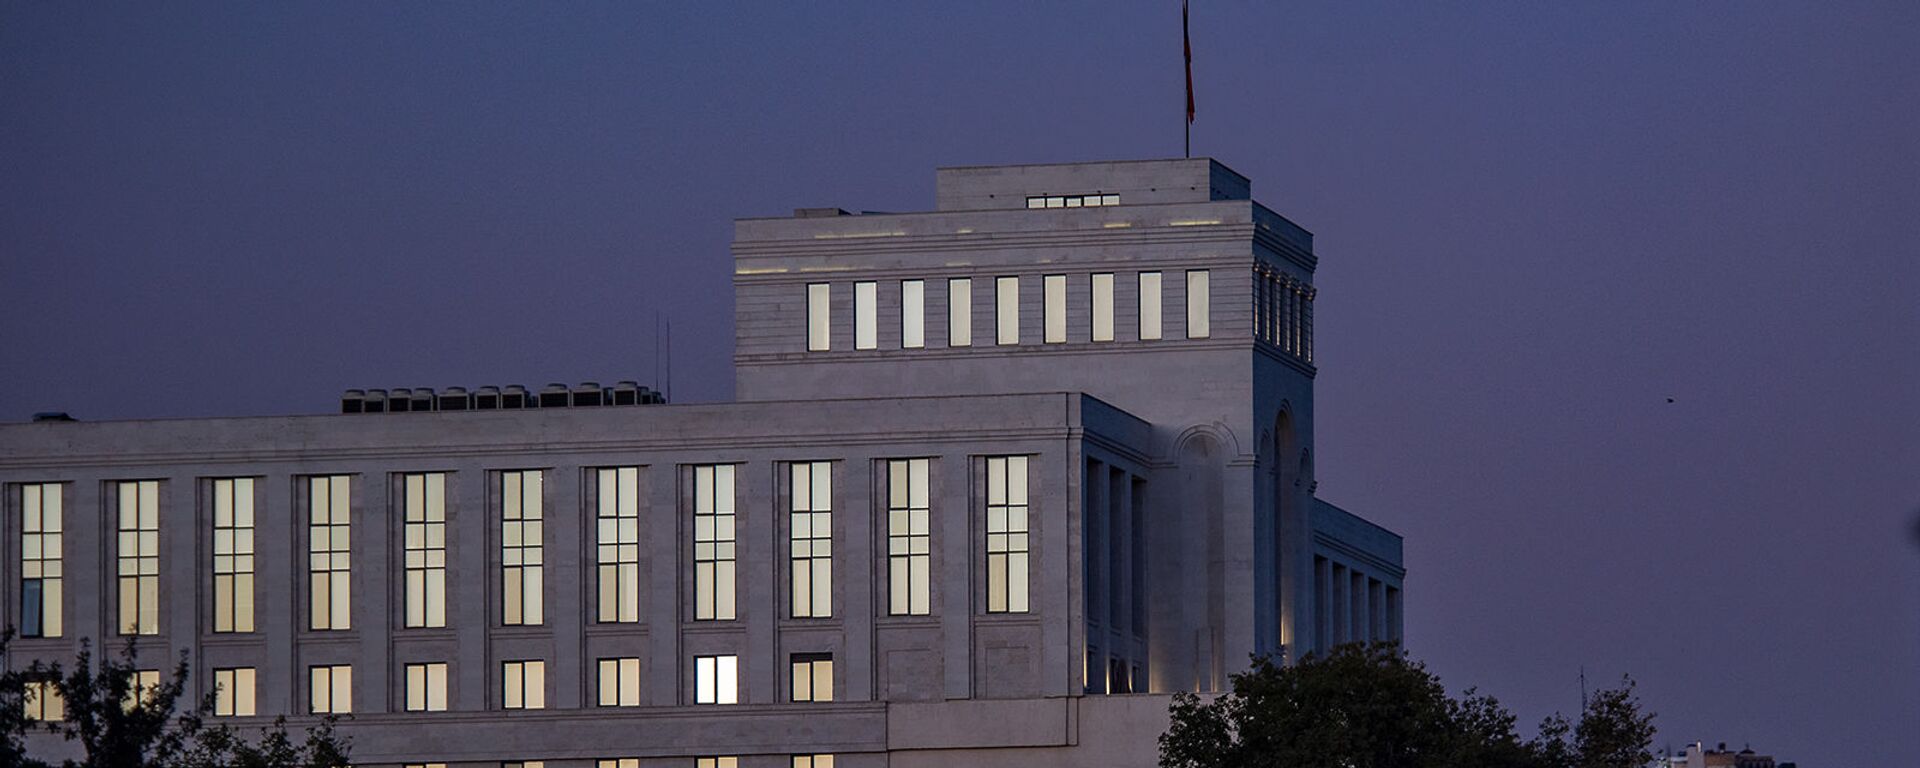 Здание Министерства иностранных дел Армении - Sputnik Արմենիա, 1920, 13.07.2021